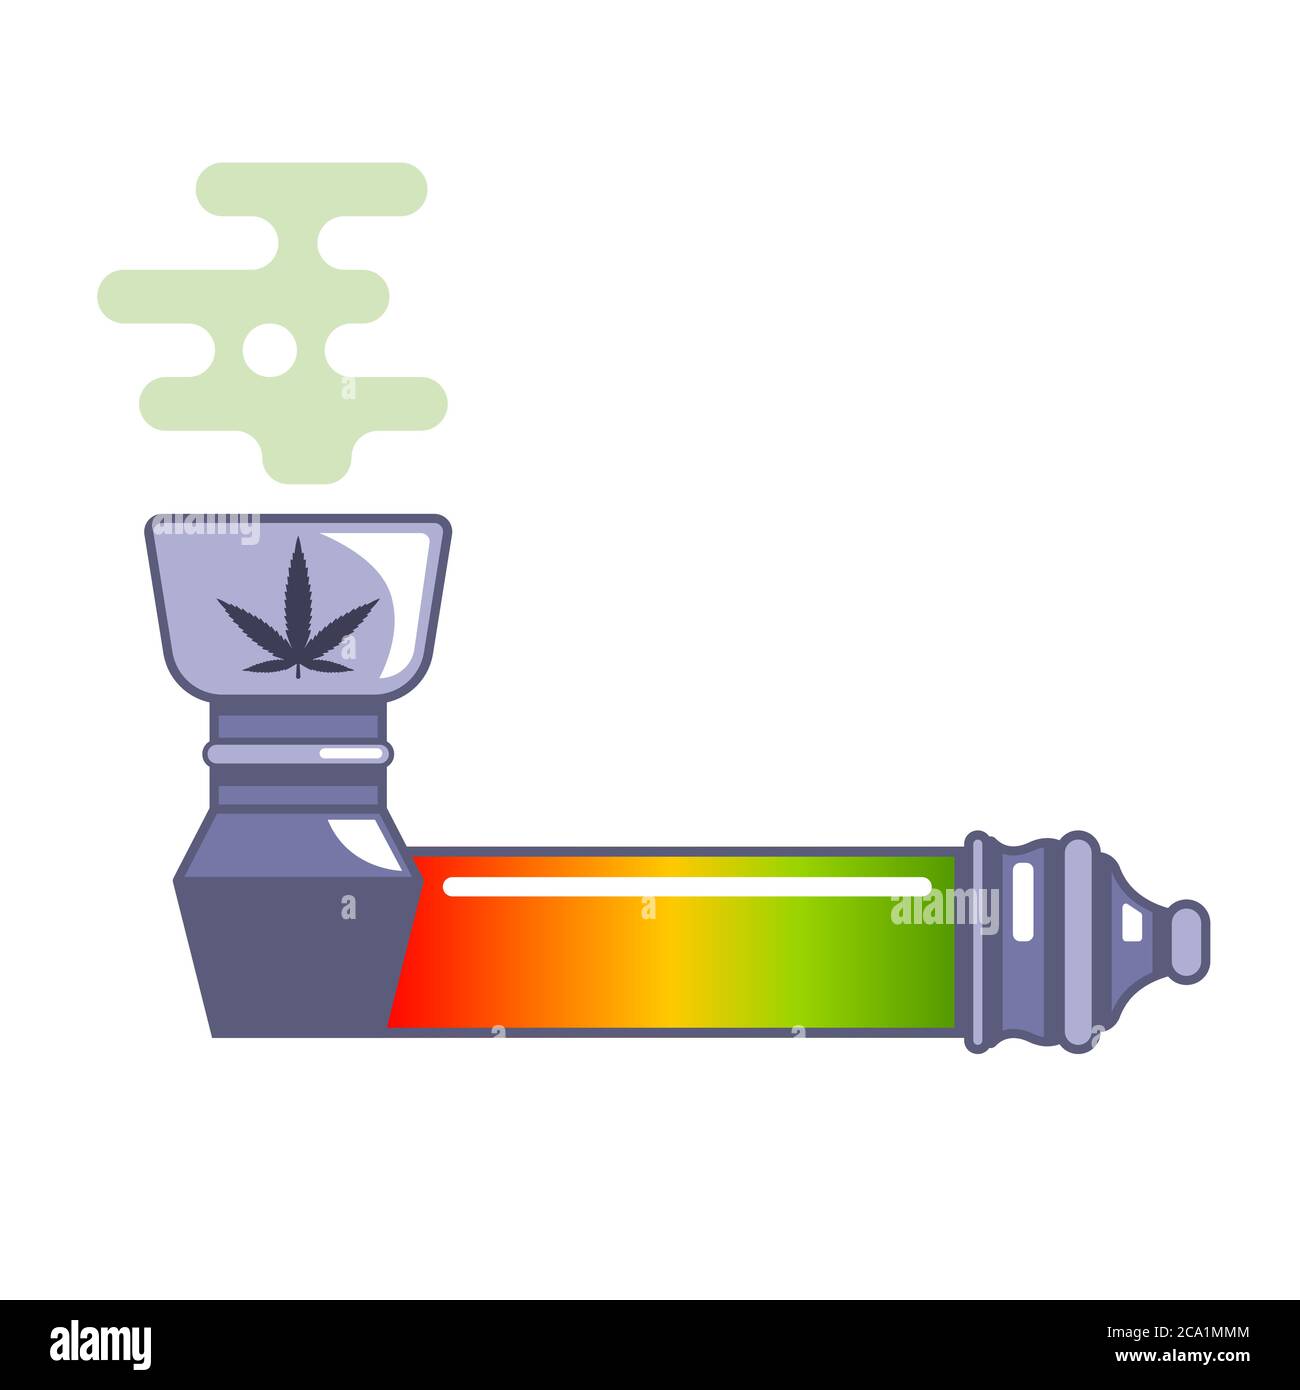 Une pipe pour fumer de la marijuana médicinale. Légalisation des drogues. illustration vectorielle plate isolée sur fond blanc. Illustration de Vecteur